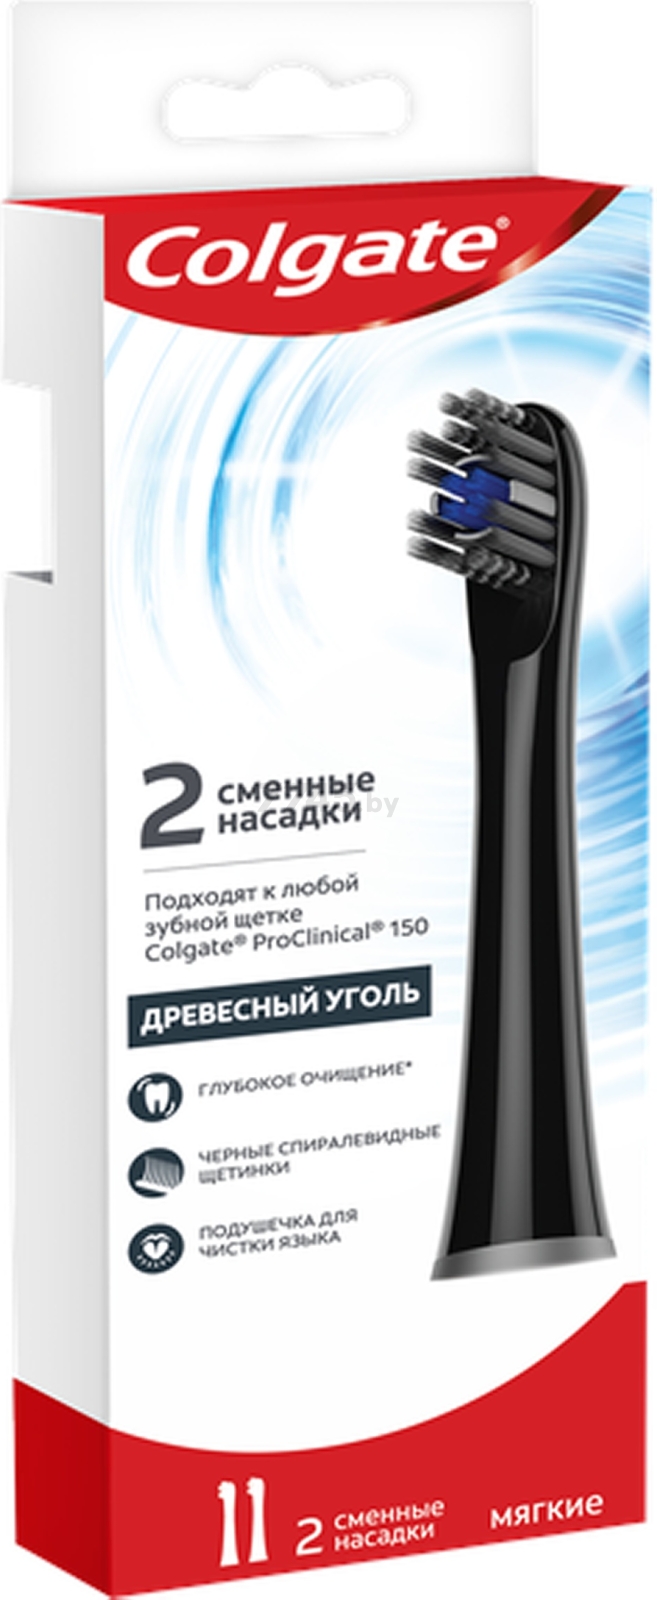 Насадки для электрической зубной щетки COLGATE ProClinical 150 Древесный Уголь 2 штуки (8718951294400) - Фото 2